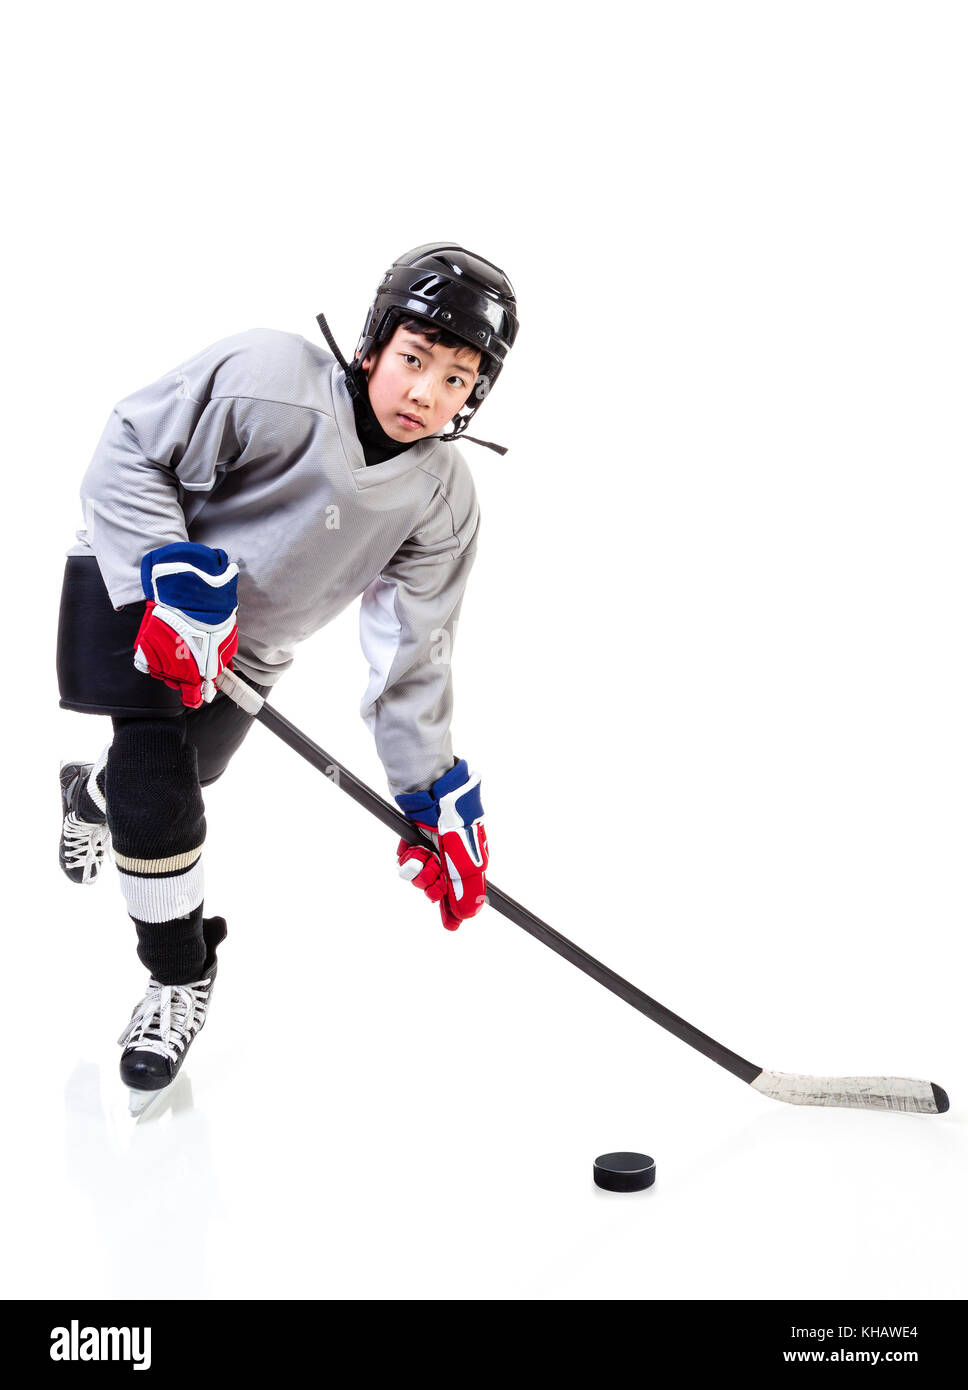 Eishockey-Spieler Skelett - 3D-Darstellung der männlichen menschlichen Skelett  Figur mit Hockey-Stick trägt Helm und Pads isoliert auf weißem Studio  Rücken Stockfotografie - Alamy